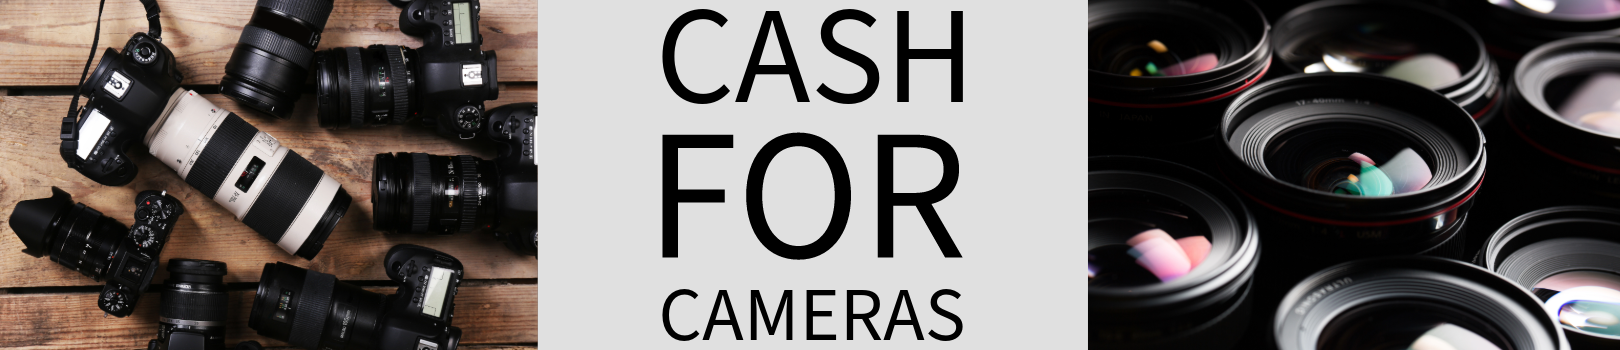 Cash For Cameras